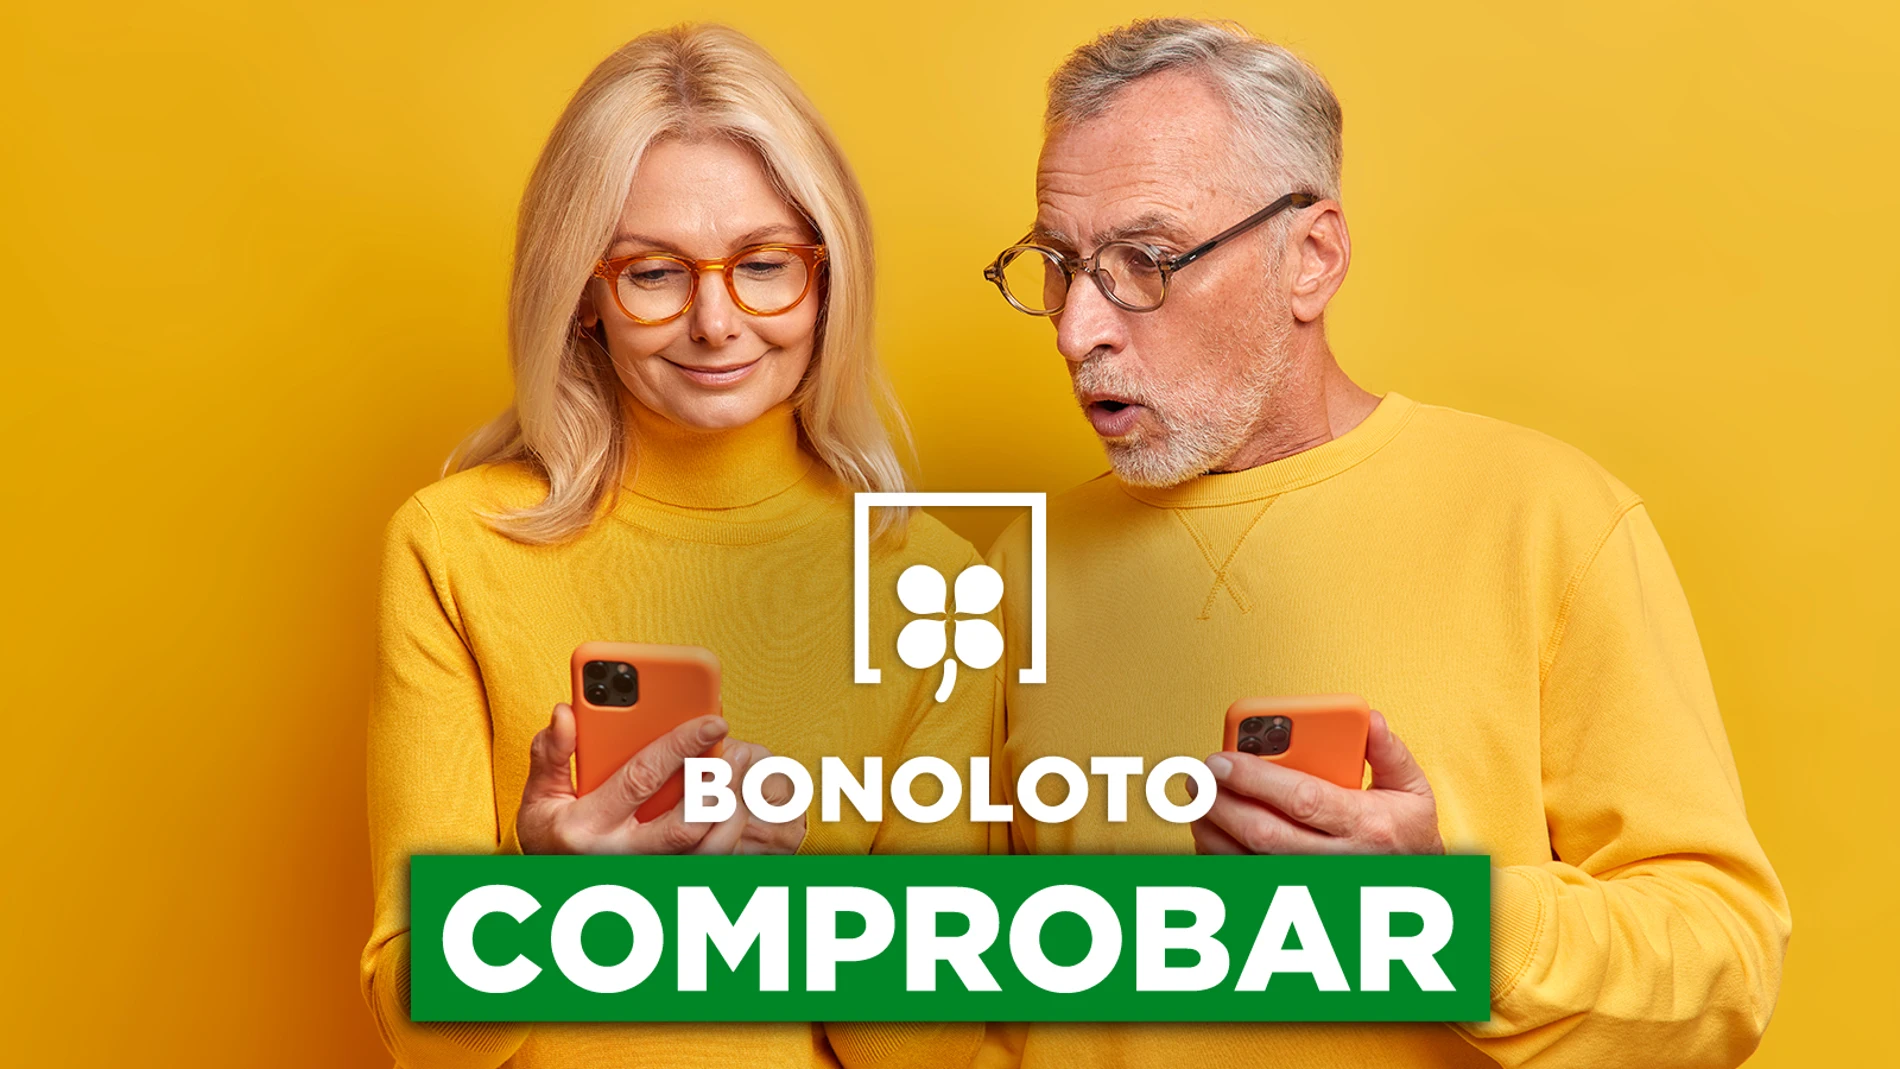 Bonoloto: comprobar hoy, viernes 29 de abril de 2022